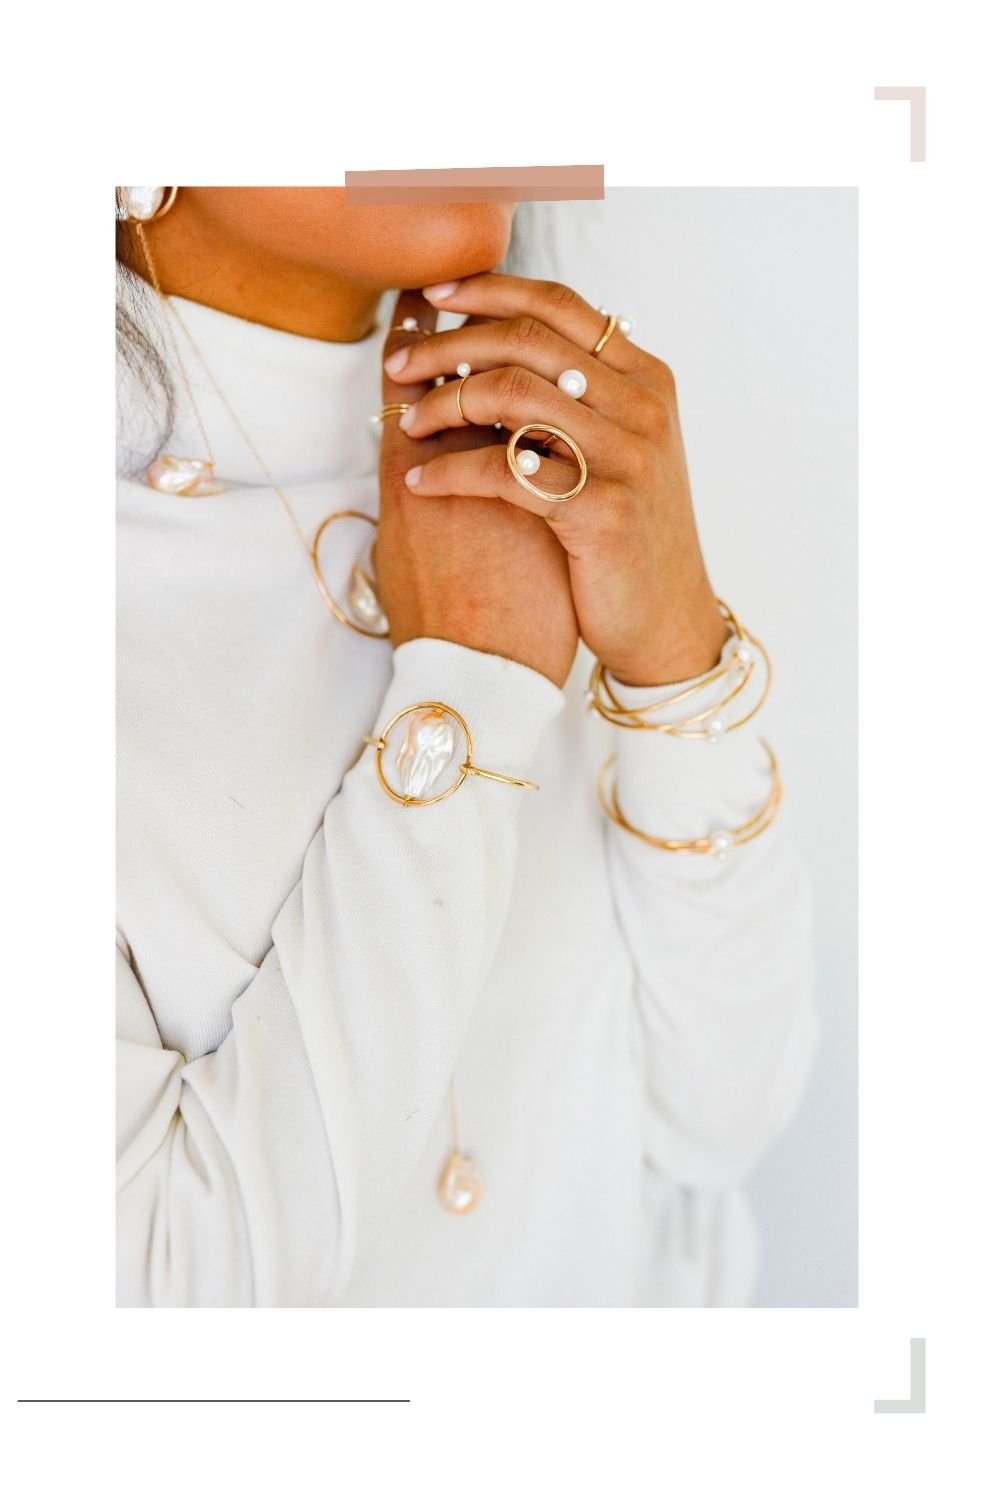 Baroque Pearl Gold-Filled Bracelet (3).jpg